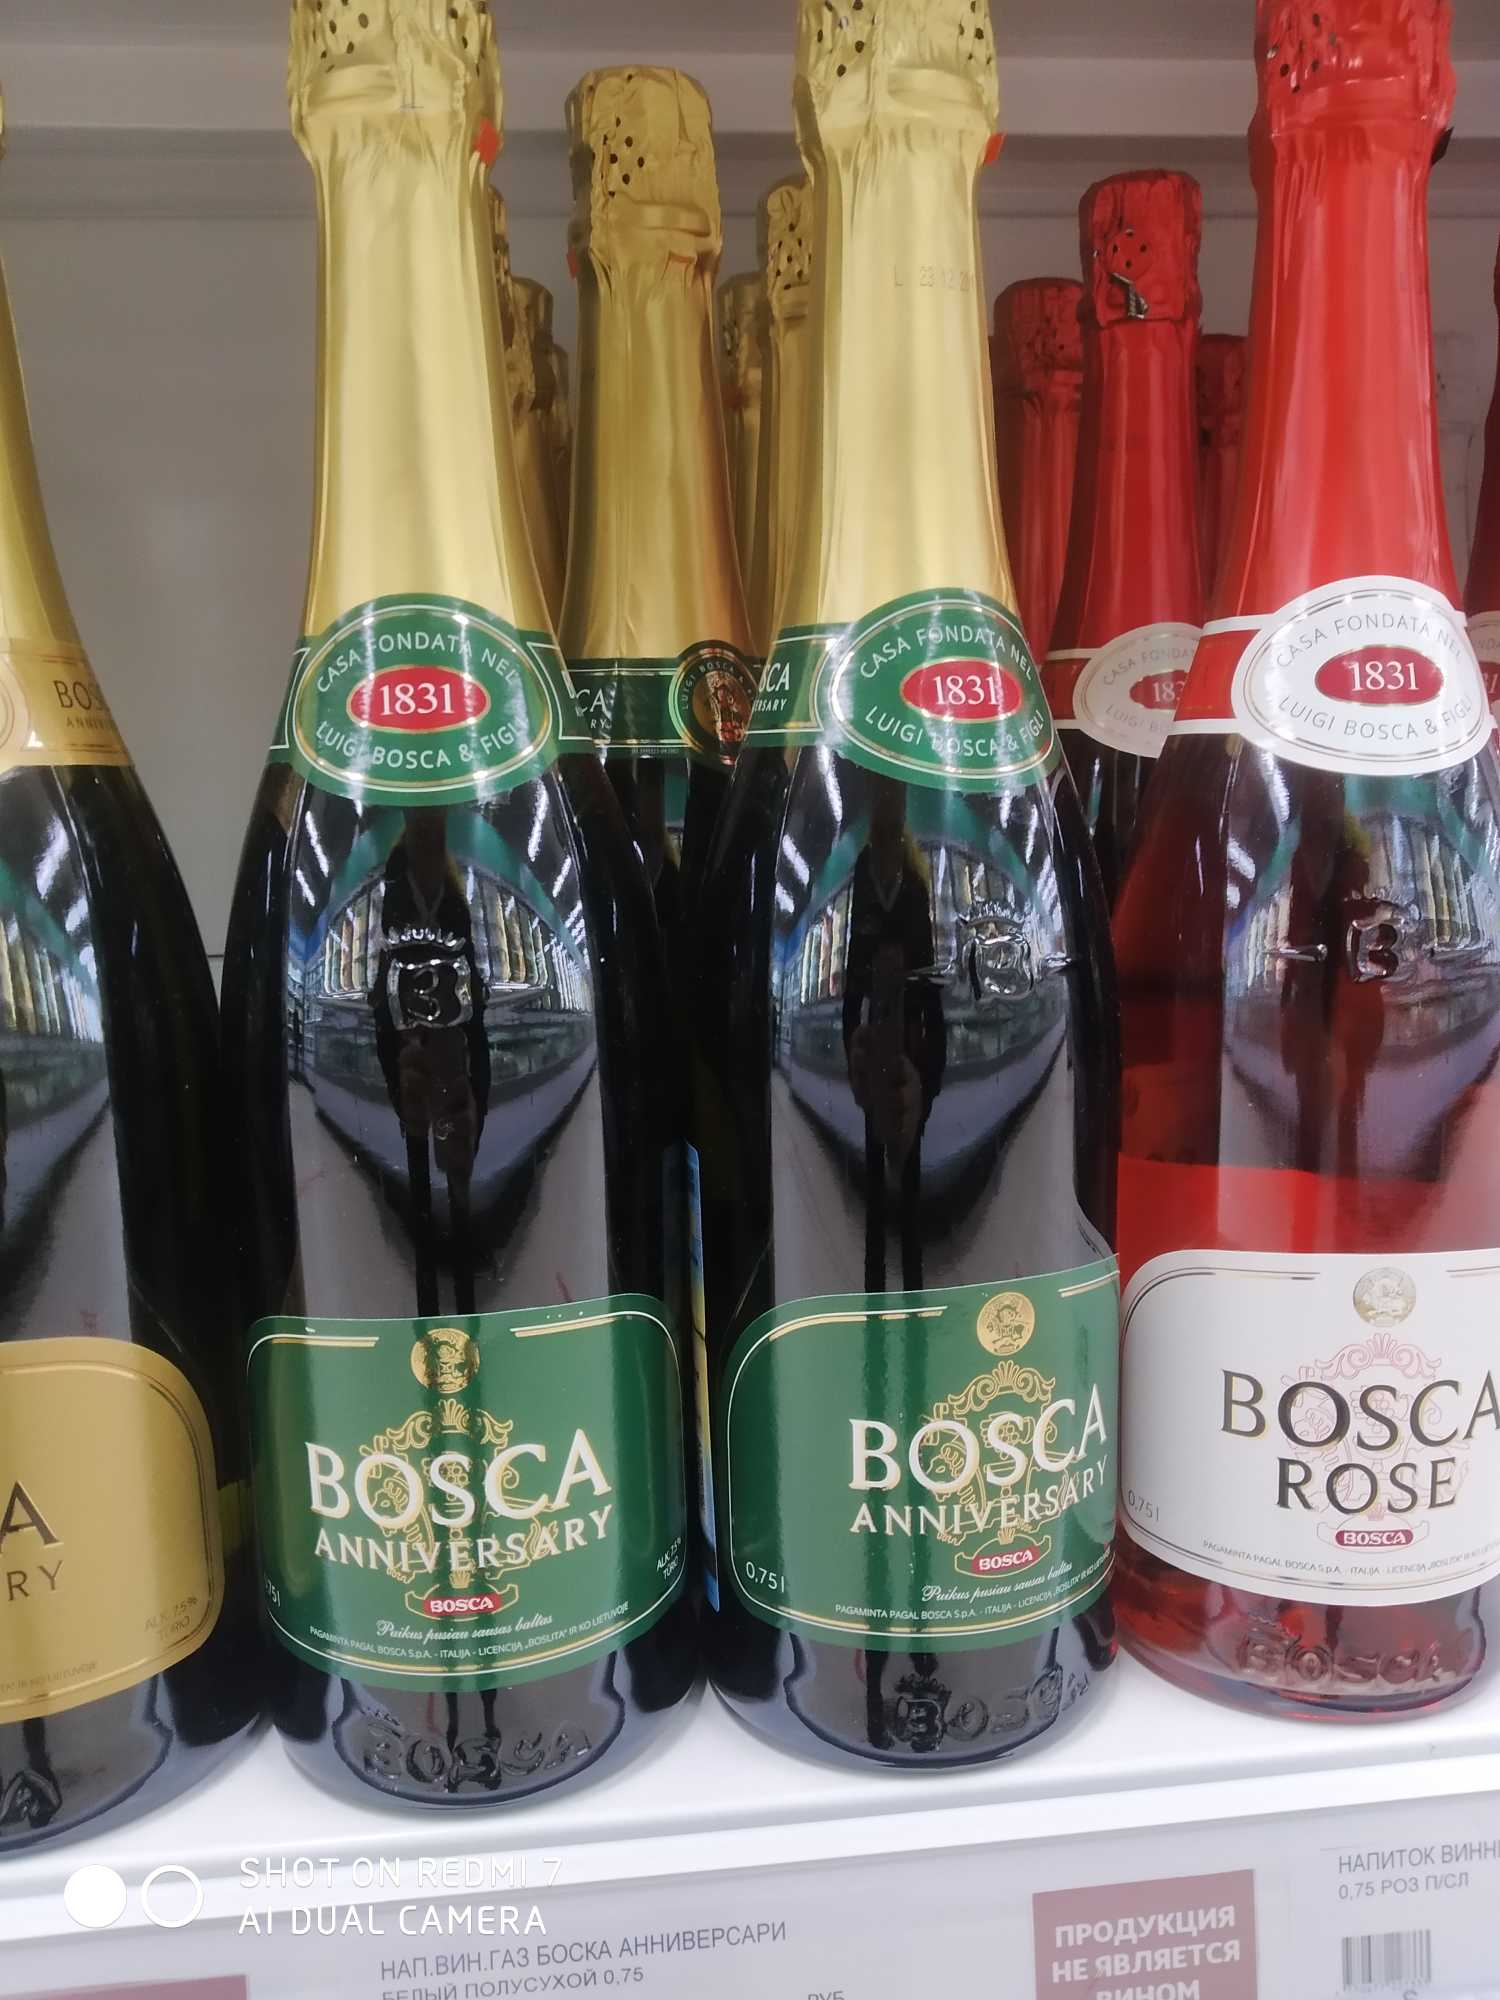 Боско напиток. Винный напиток Bosca Боско. Боско шампанское Анниверсари. Напиток винный Bosca Анниверсари. Винный напиток Bosca Rose 0.75.